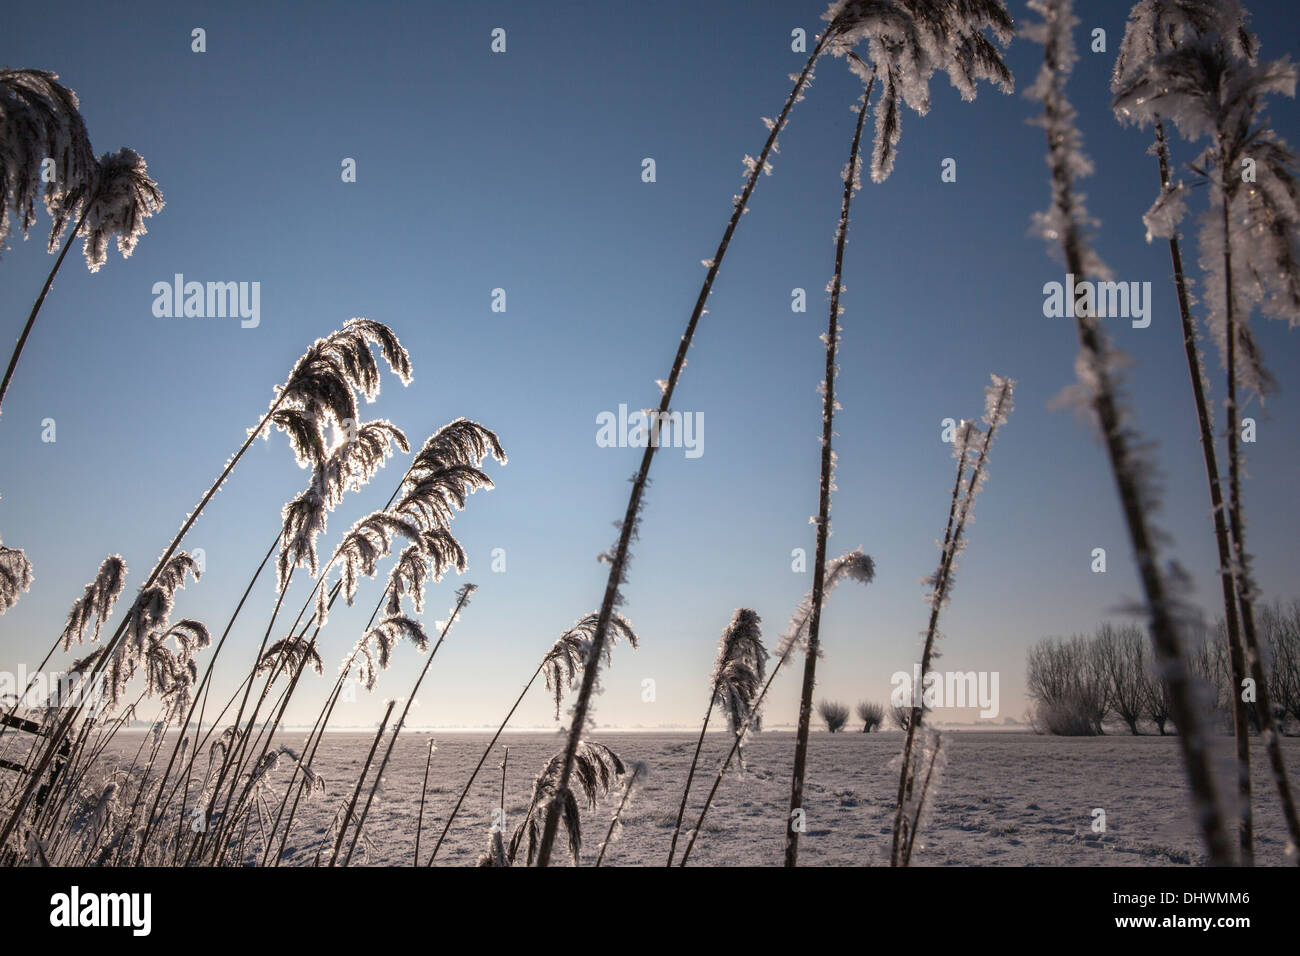 Pays-bas, Zegveld, des cristaux de glace sur reed plume. des saules. L'hiver Banque D'Images